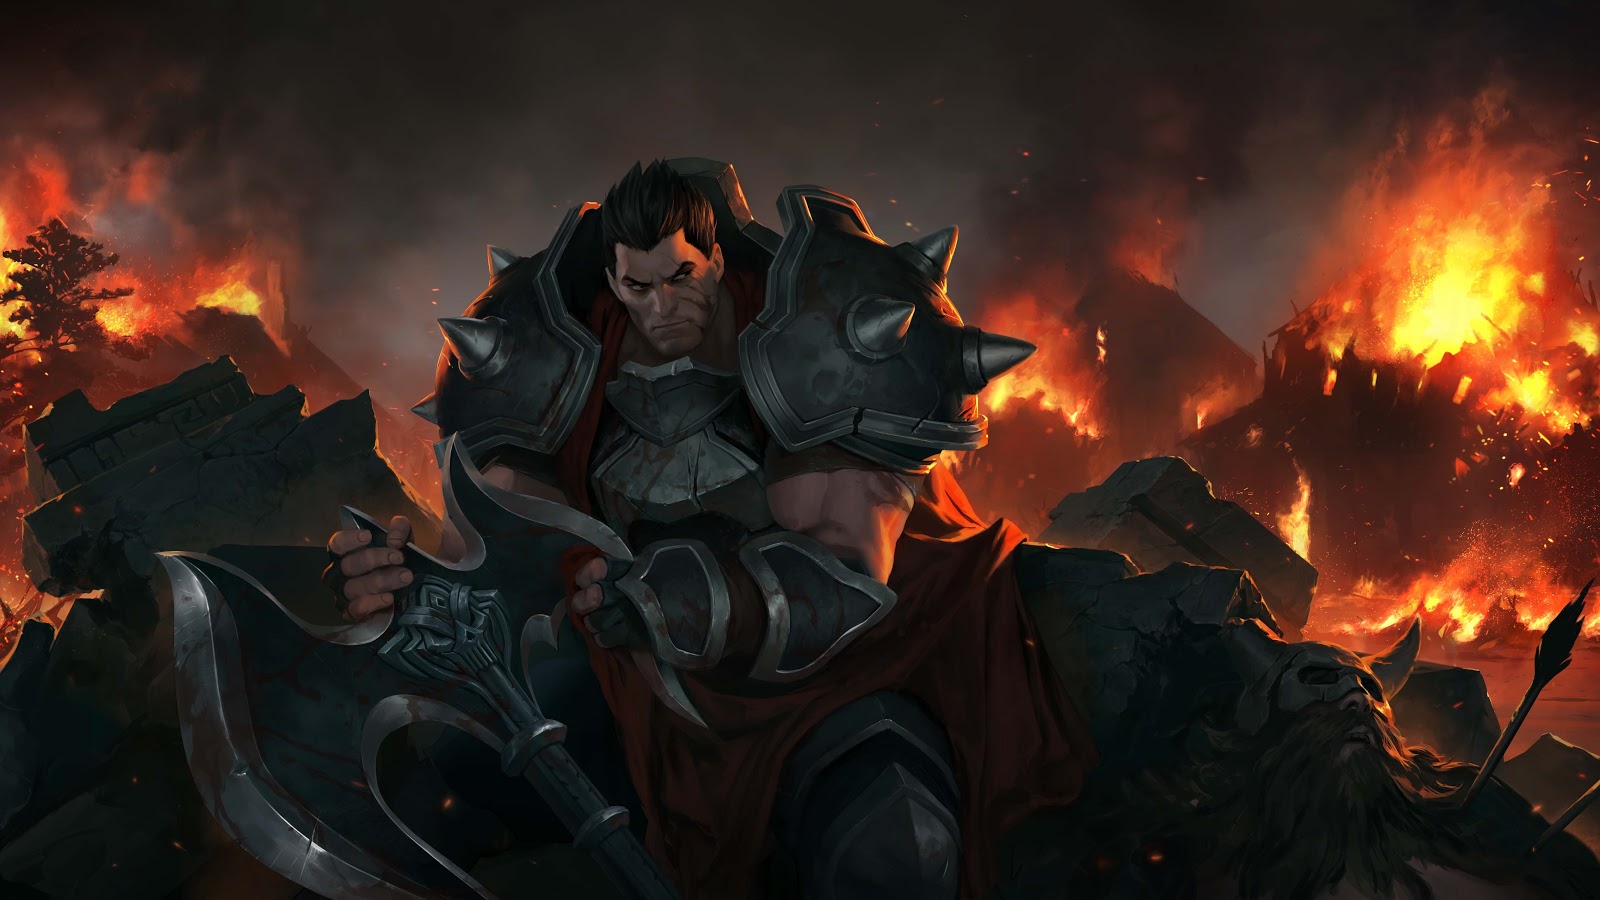 Darius siede tra le macerie con la lama della sua ascia tra le mani, mentre osserva la distruzione in fiamme dietro di sé.